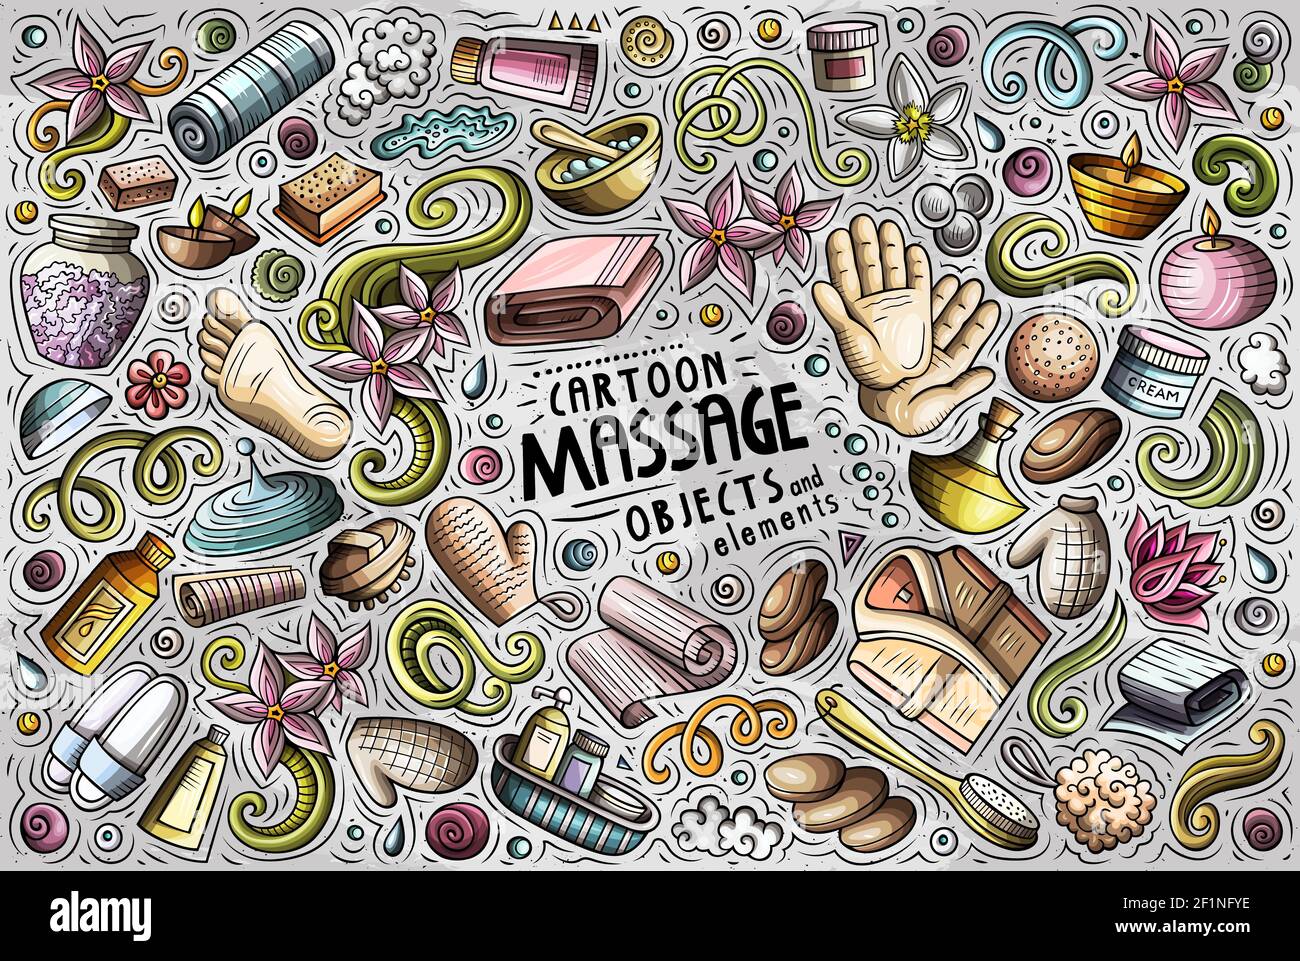 Bunte Vektor Hand gezeichnete Doodle Cartoon Satz von Massage Themen Artikel, Objekte und Symbole Stock Vektor